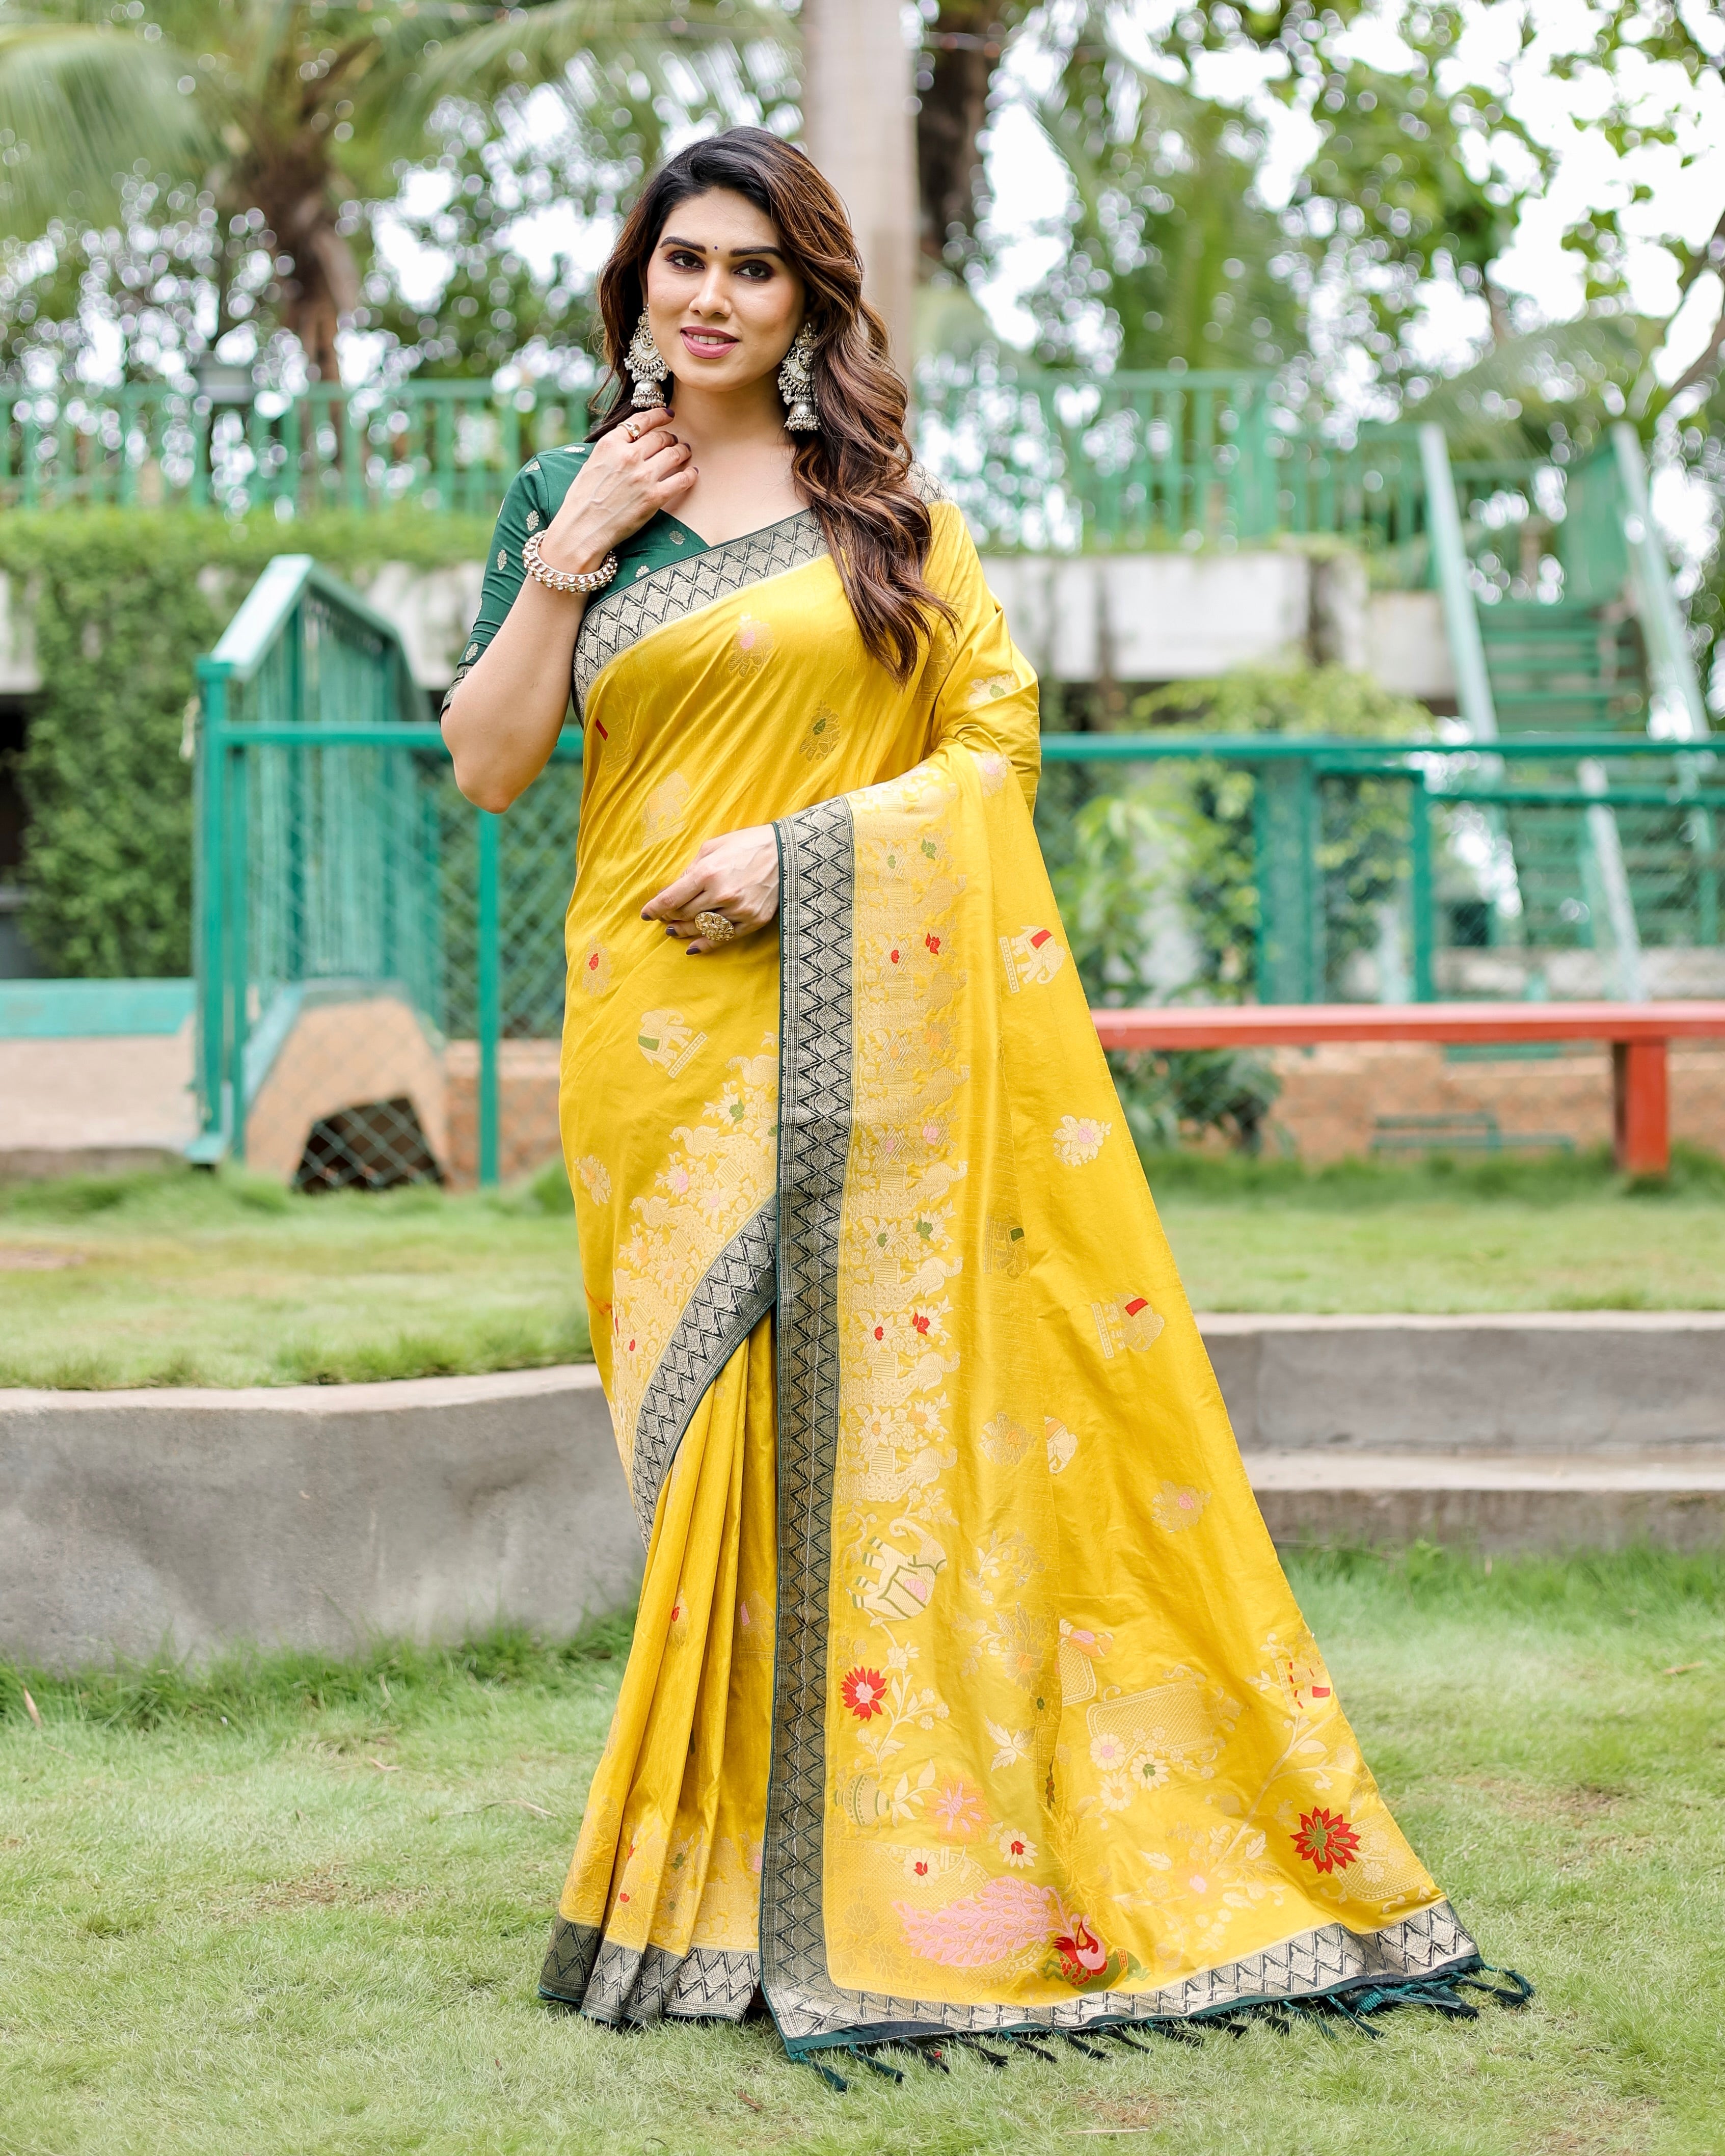 Premium Quality Handpicked & Easy To Drape Dola Silk Yellow Saree For This Wedding Season